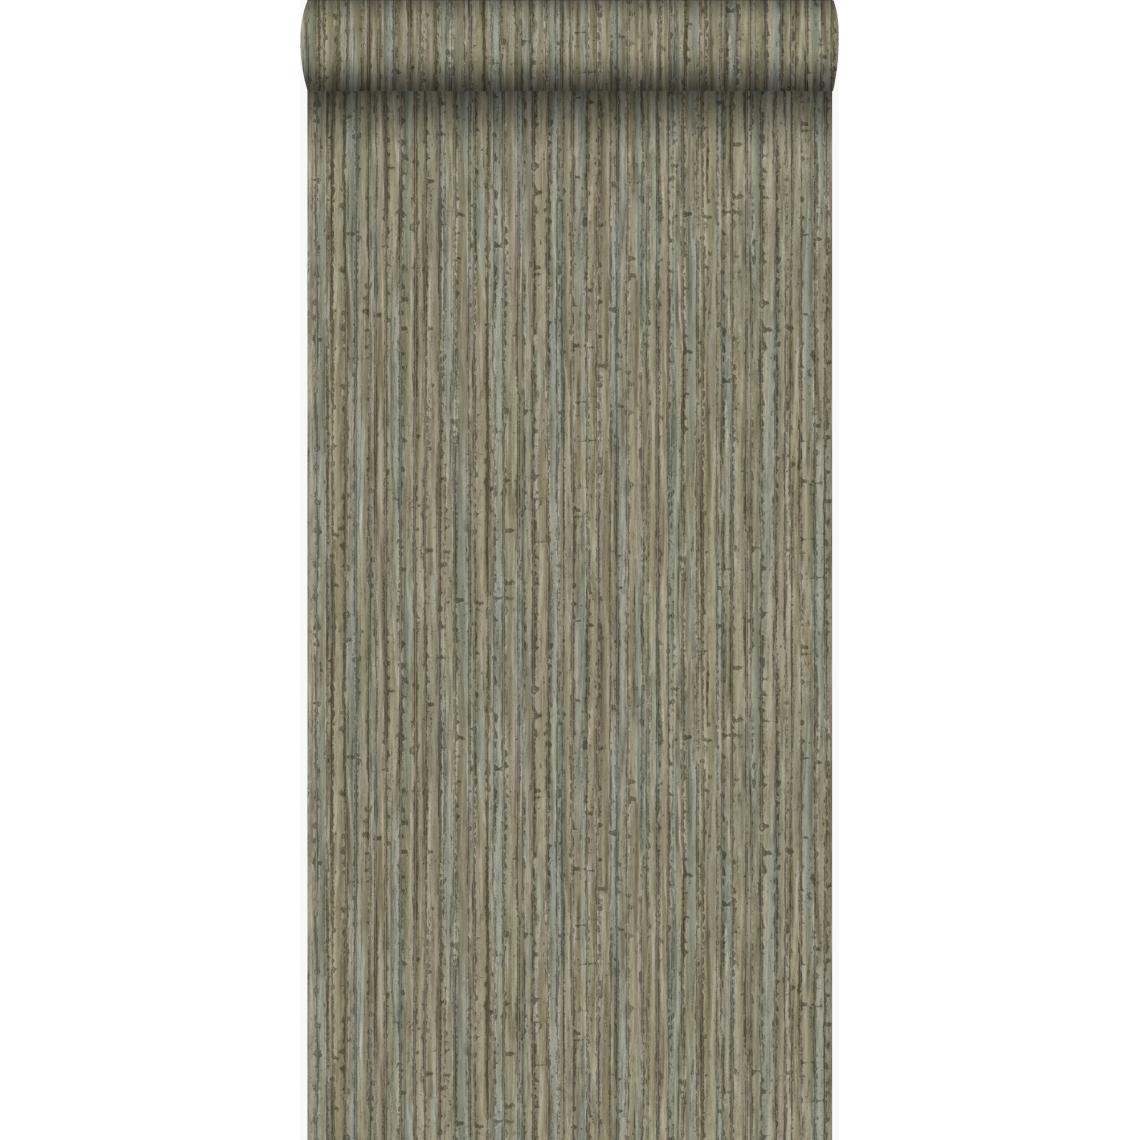 Origin - Origin papier peint bambou taupe foncé - 347405 - 53 cm x 10,05 m - Papier peint